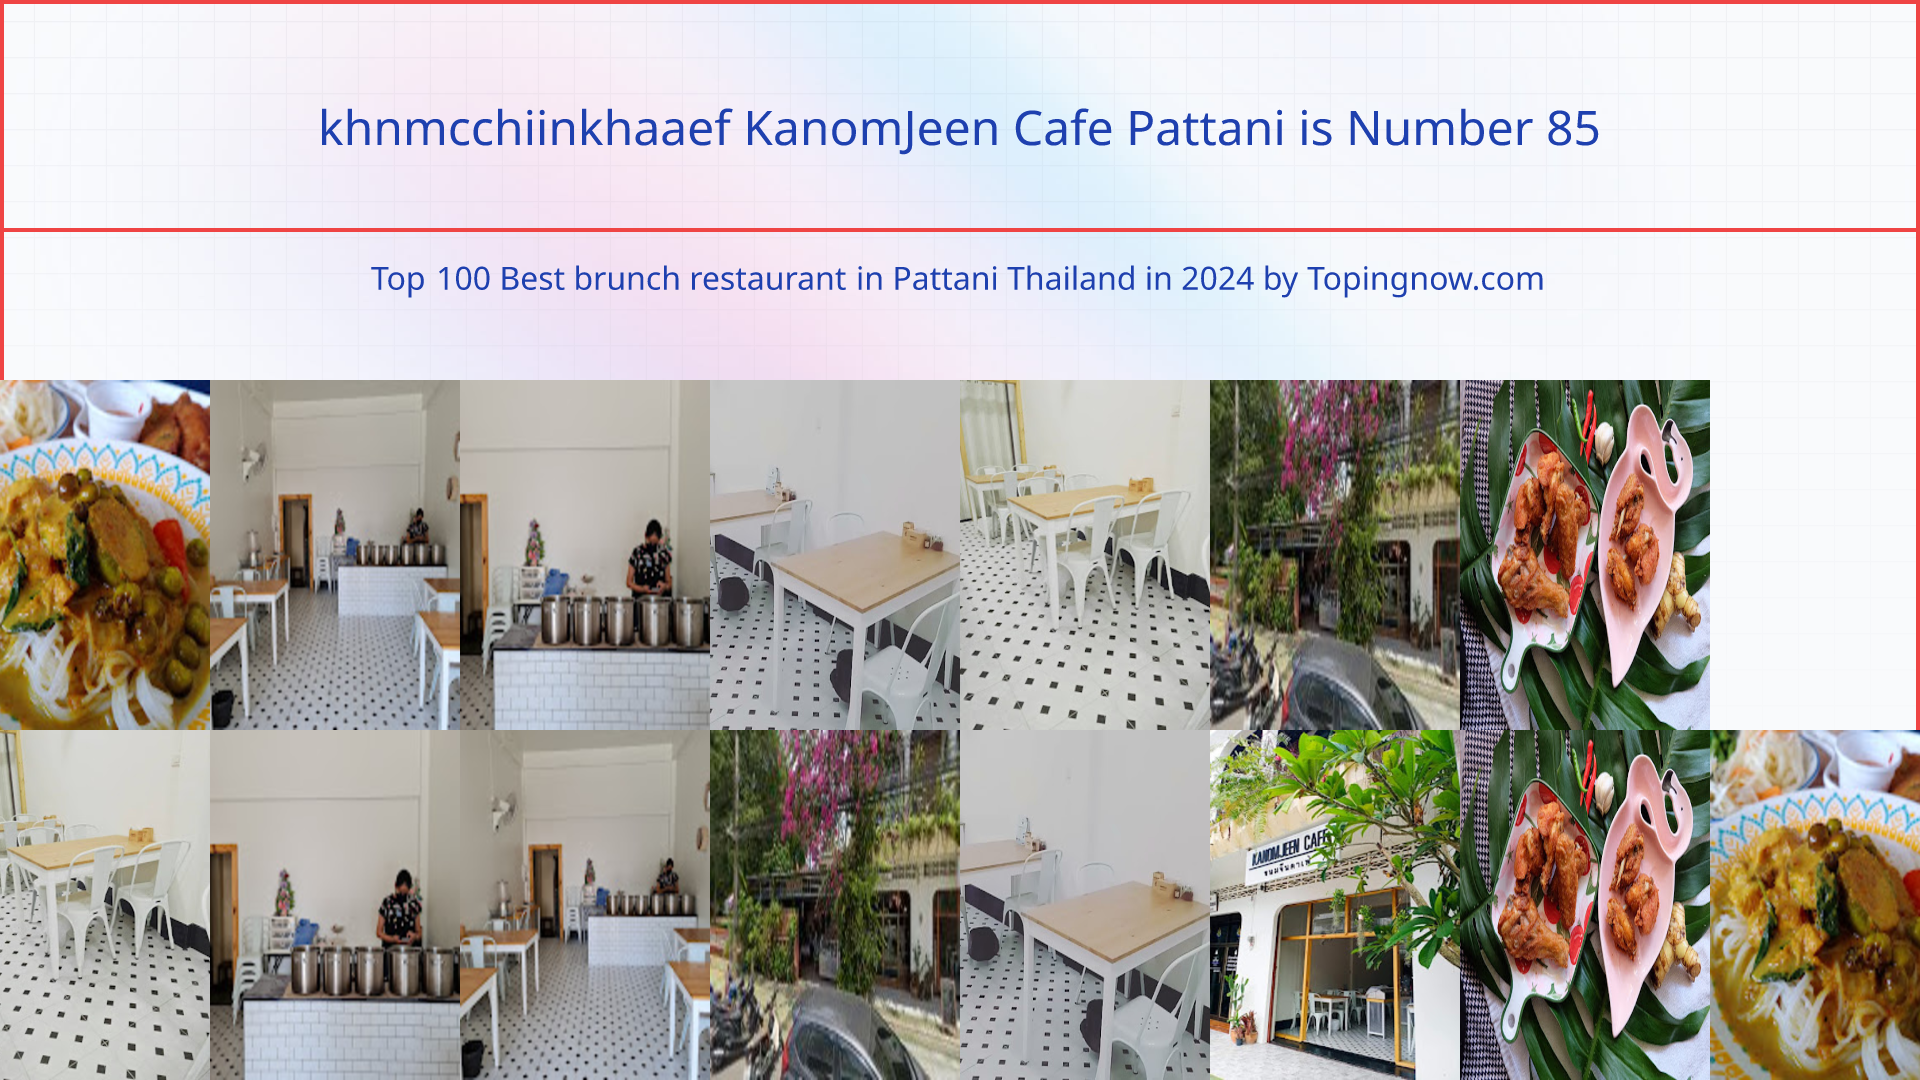 khnmcchiinkhaaef KanomJeen Cafe Pattani: Top 100 Best brunch restaurant in Pattani Thailand in 2024